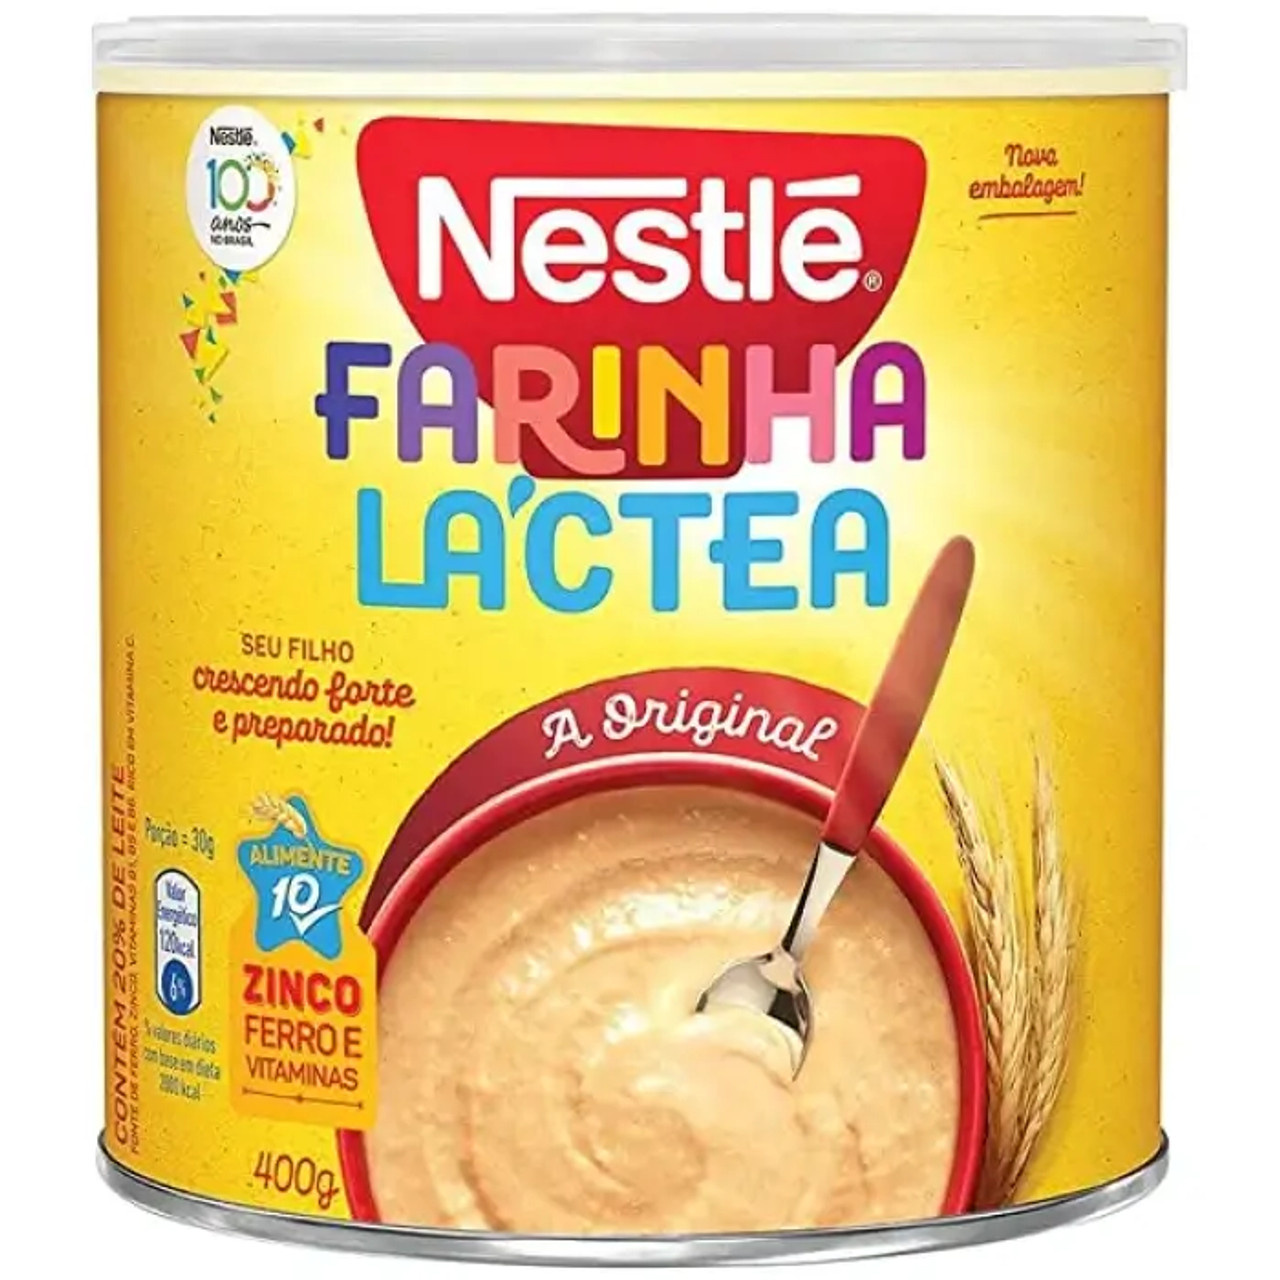 Nestlé Farinha Láctea (24/Case) 360g - Nutrient-Rich Milk Powder for Infants - Chicken Pieces